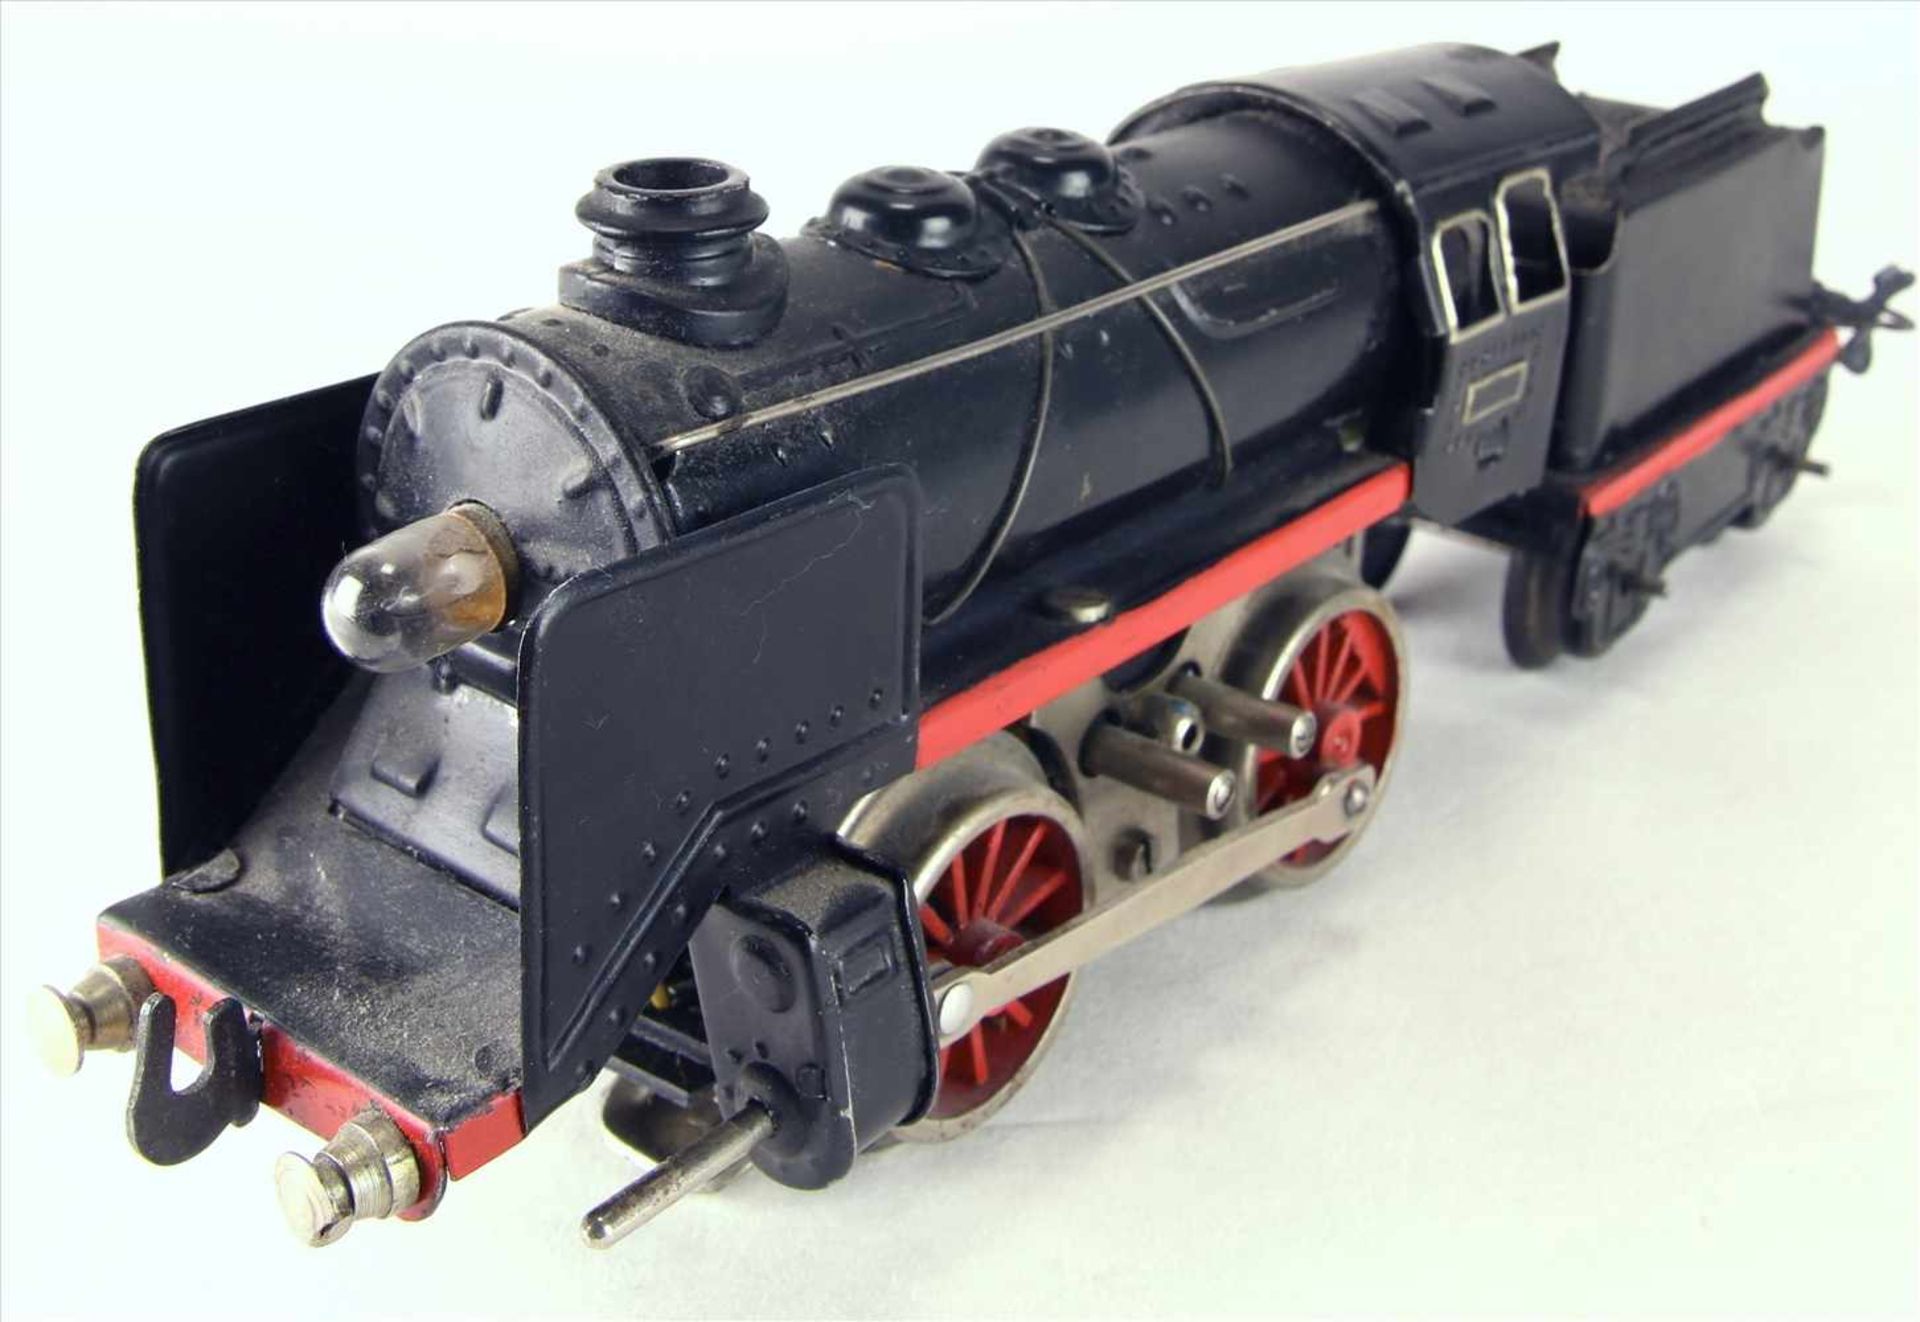 Dampflokomotive Spur 0Karl Bub späte 1940-er Jahre. Dampflok mit Tender. Elektroantrieb.